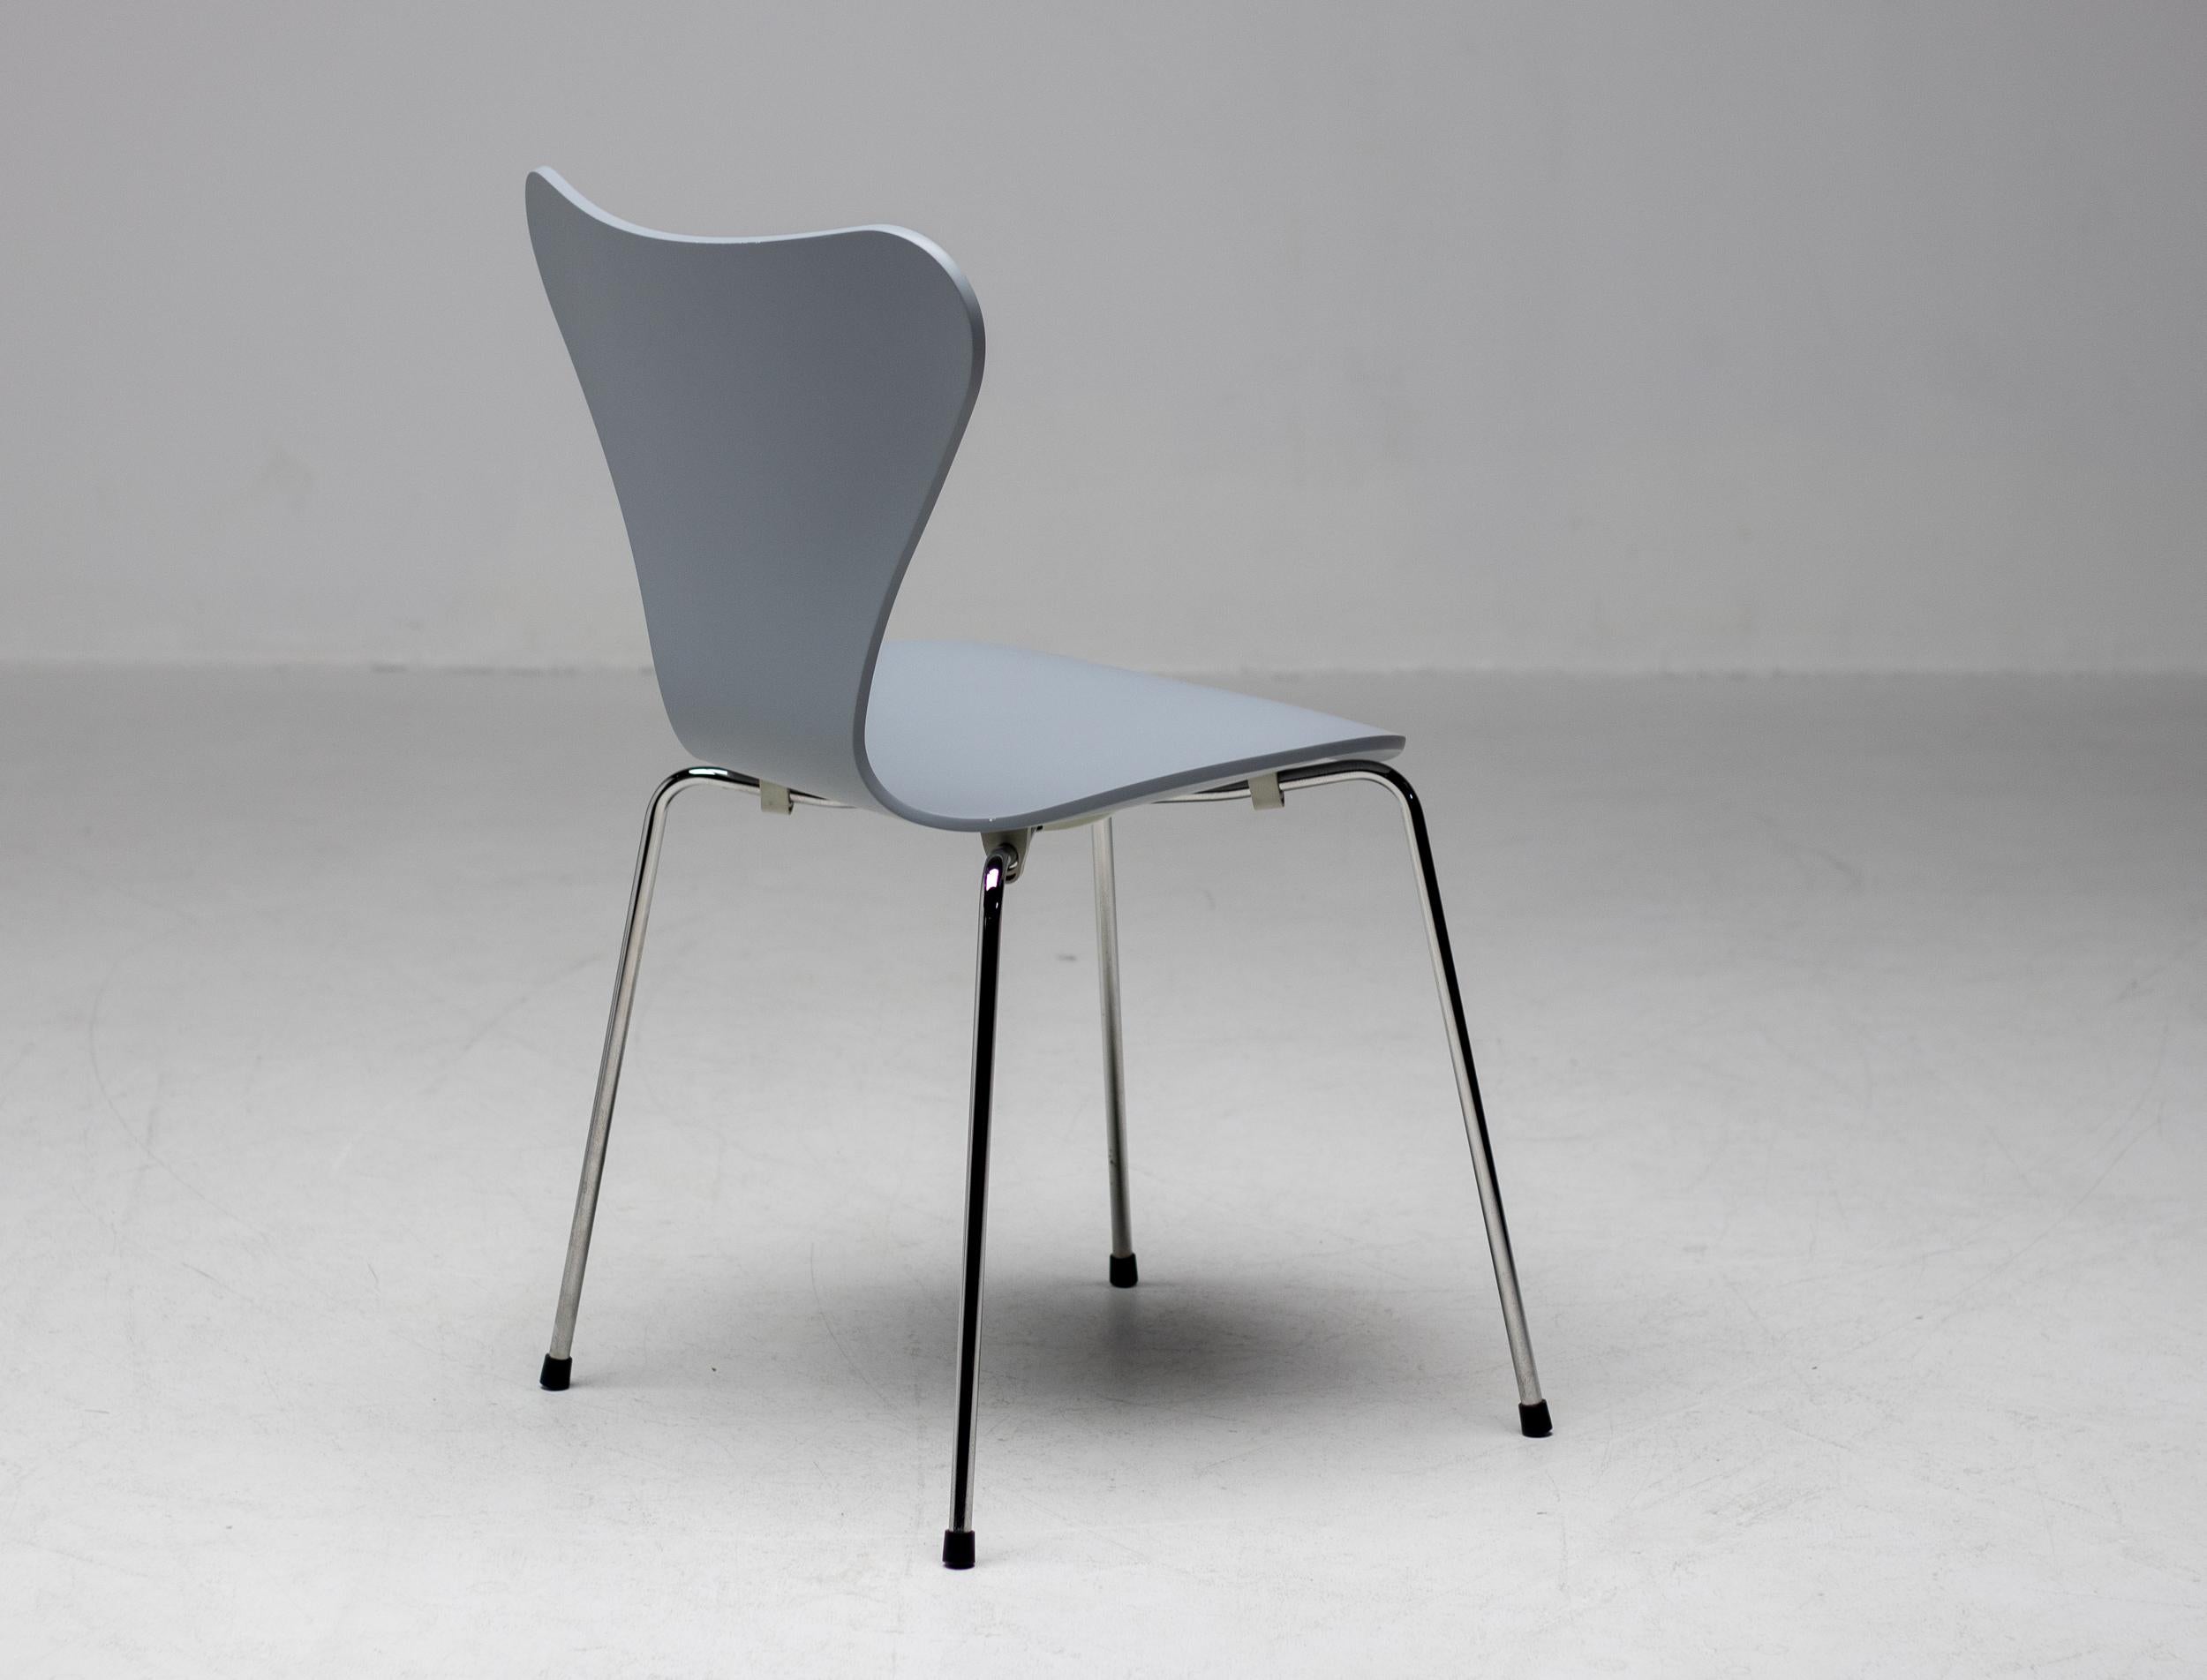 Limitierte Auflage des kultigen Arne Jacobsen Stuhls der Serie 7 aus dem Jahr 2009.
Als Hommage an dieses Design wählte Fritz Hansen 7 Designer der jungen Generation aus, um ihre Lieblingsfarbe zu wählen. Maarten Baas wurde zu einem der führenden